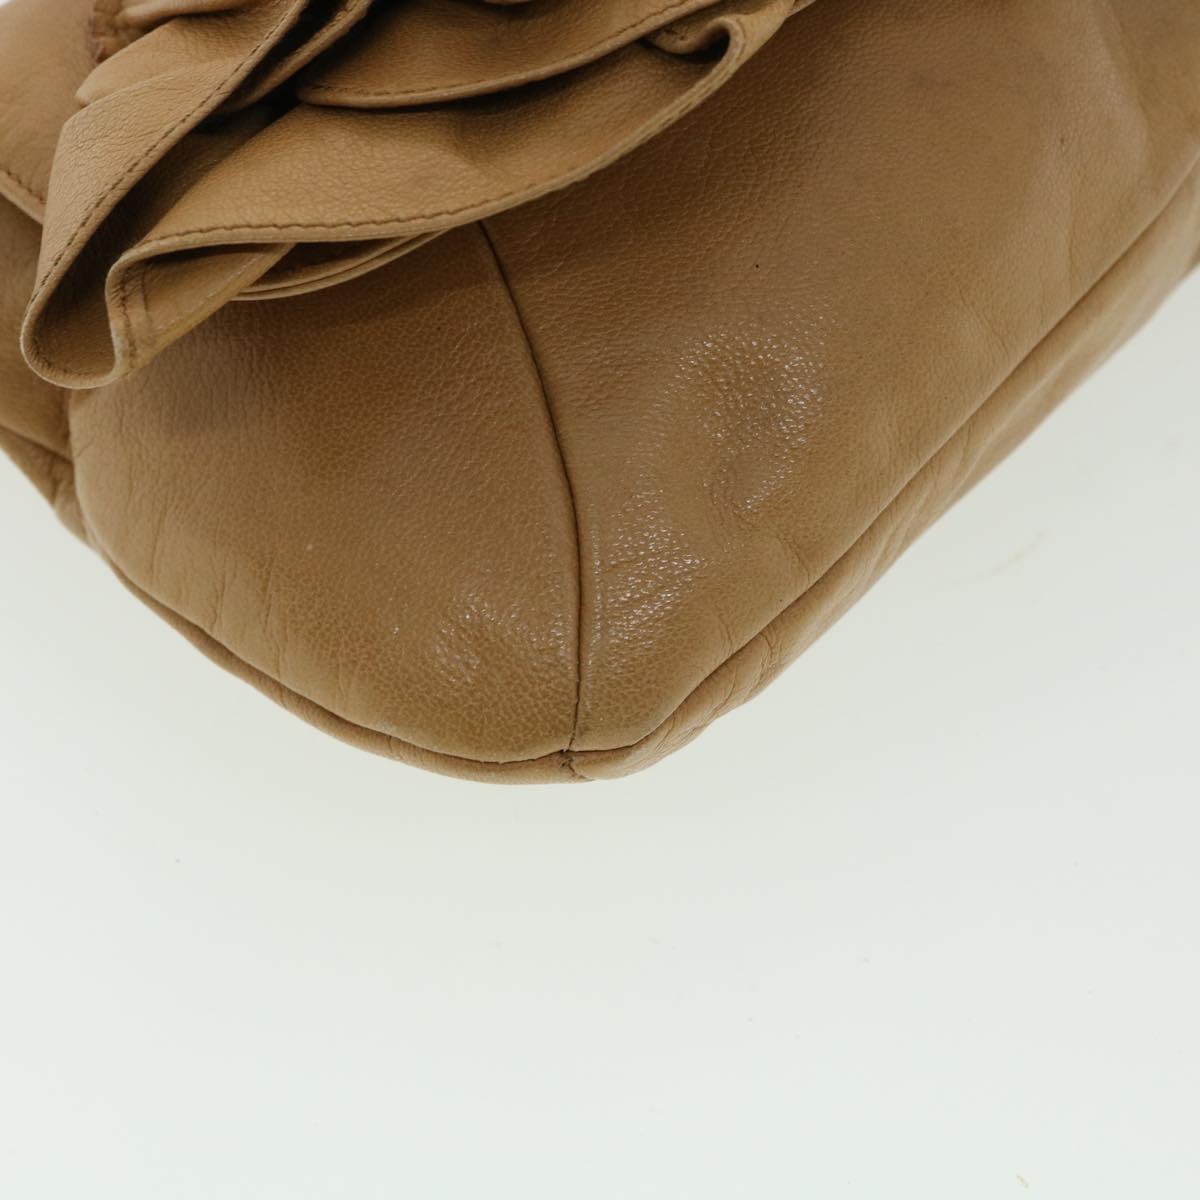 SAINT LAURENT Shoulder Bag Leather Beige Auth am3303